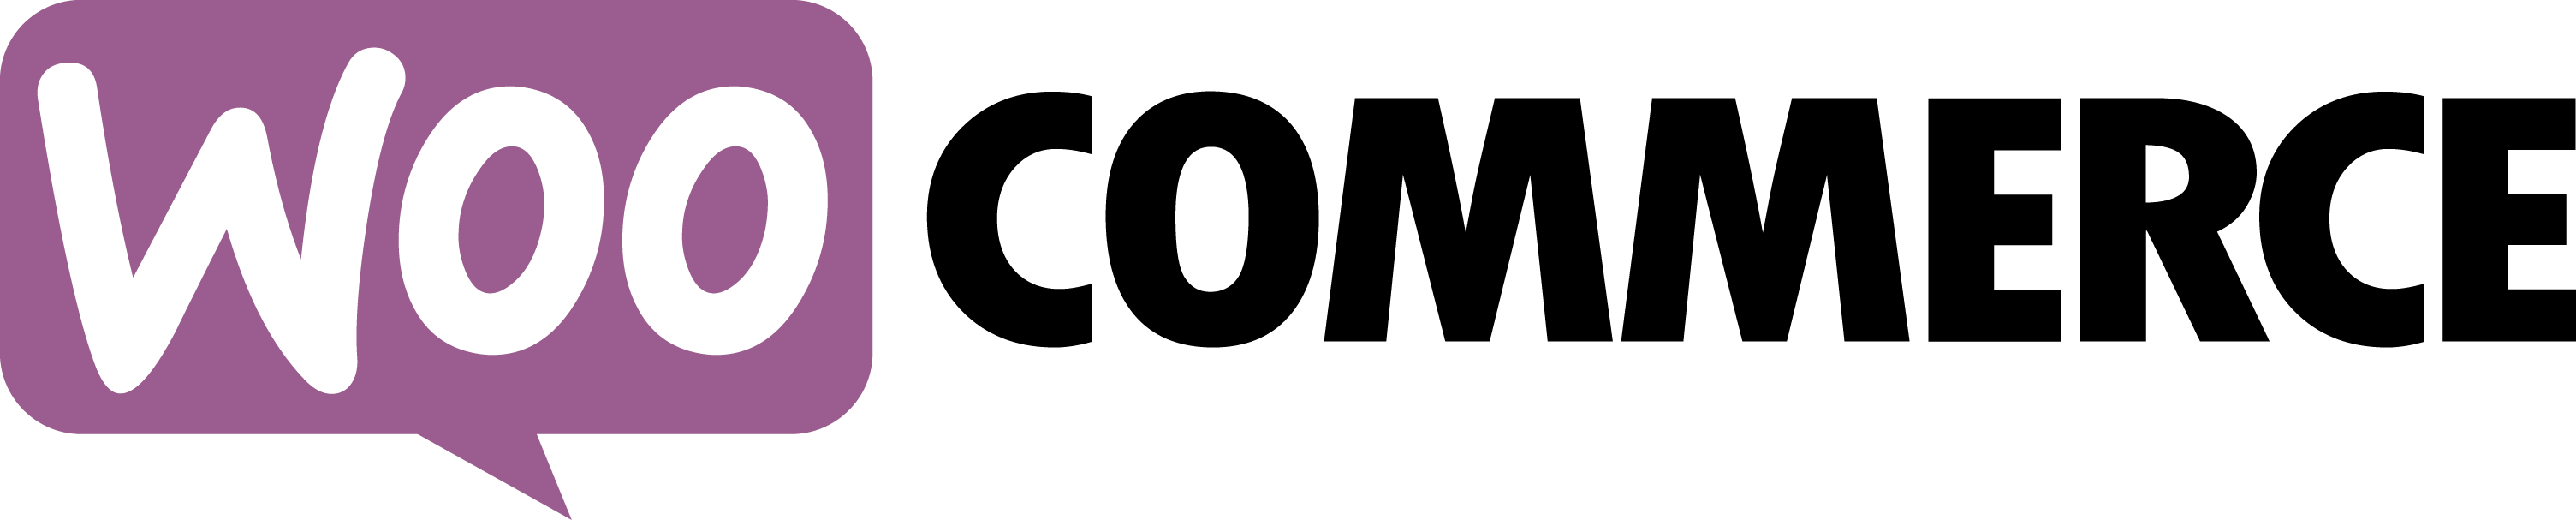 Woocommerce Logo png